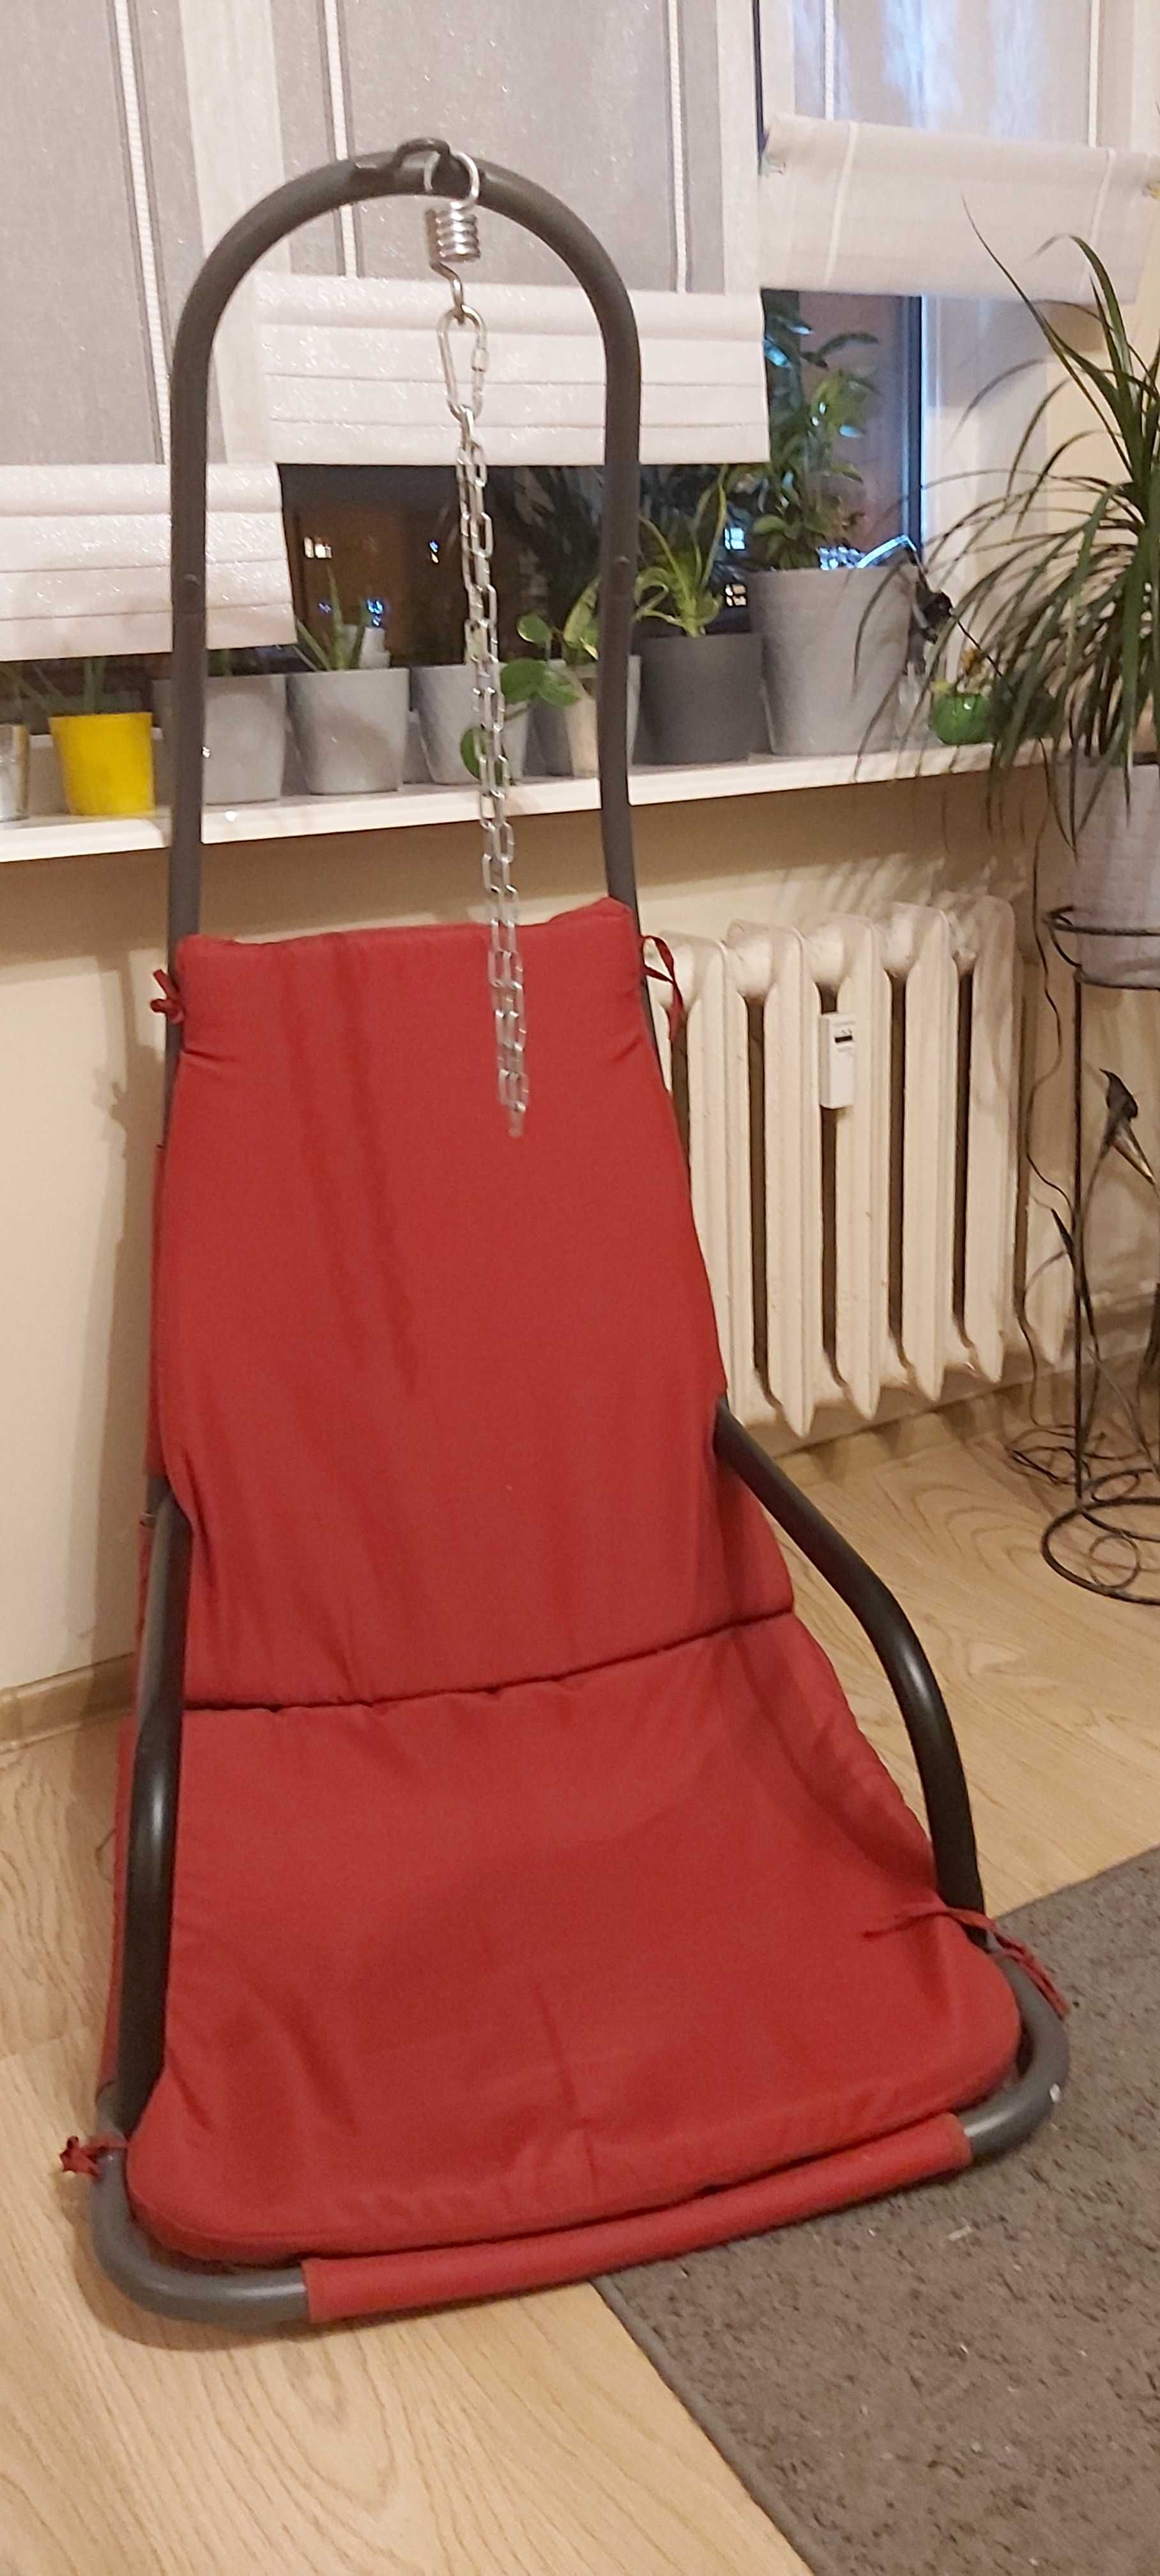 Fotel podwieszany - SUPER OFERTA!